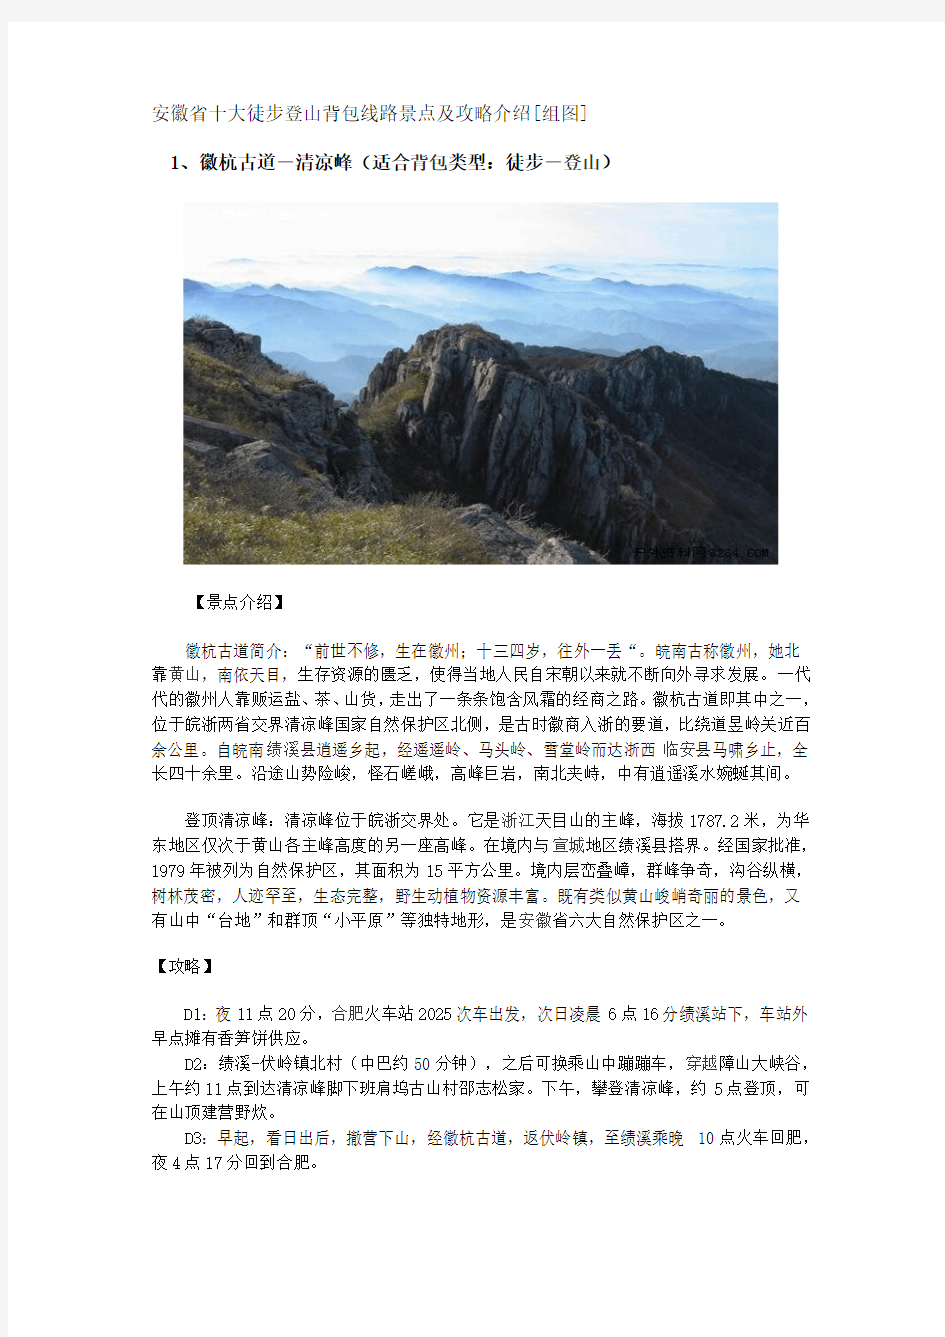 安徽省十大徒步登山背包线路景点及攻略介绍